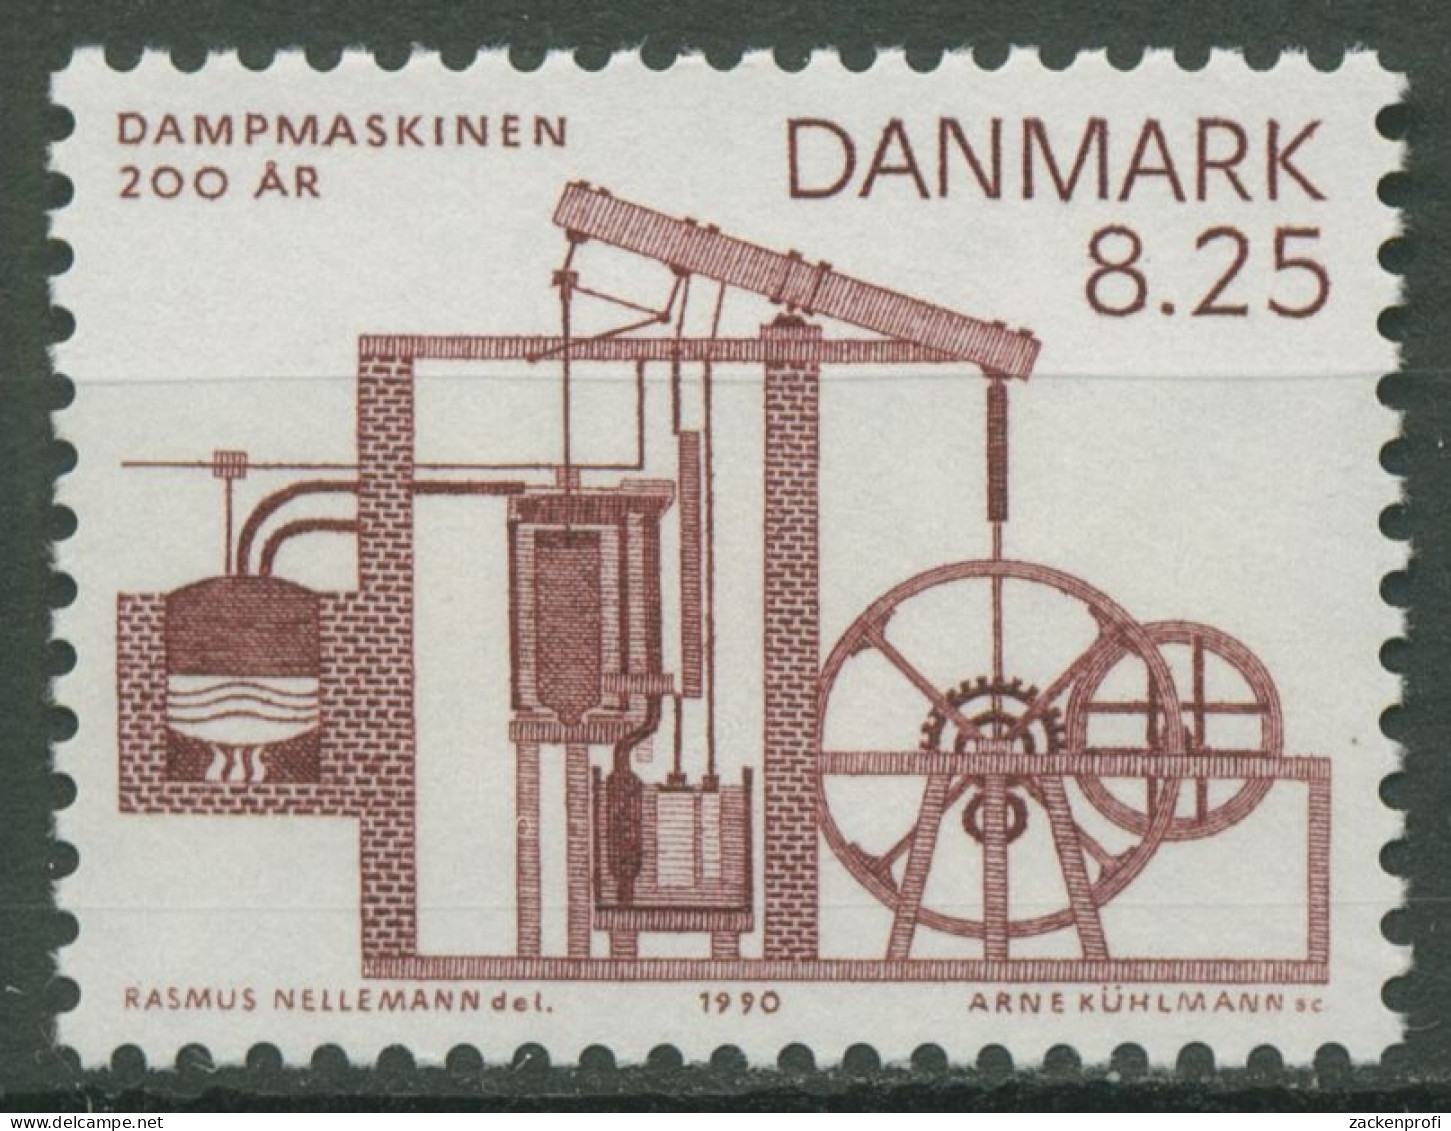 Dänemark 1990 Dampfmaschine 972 Postfrisch - Neufs